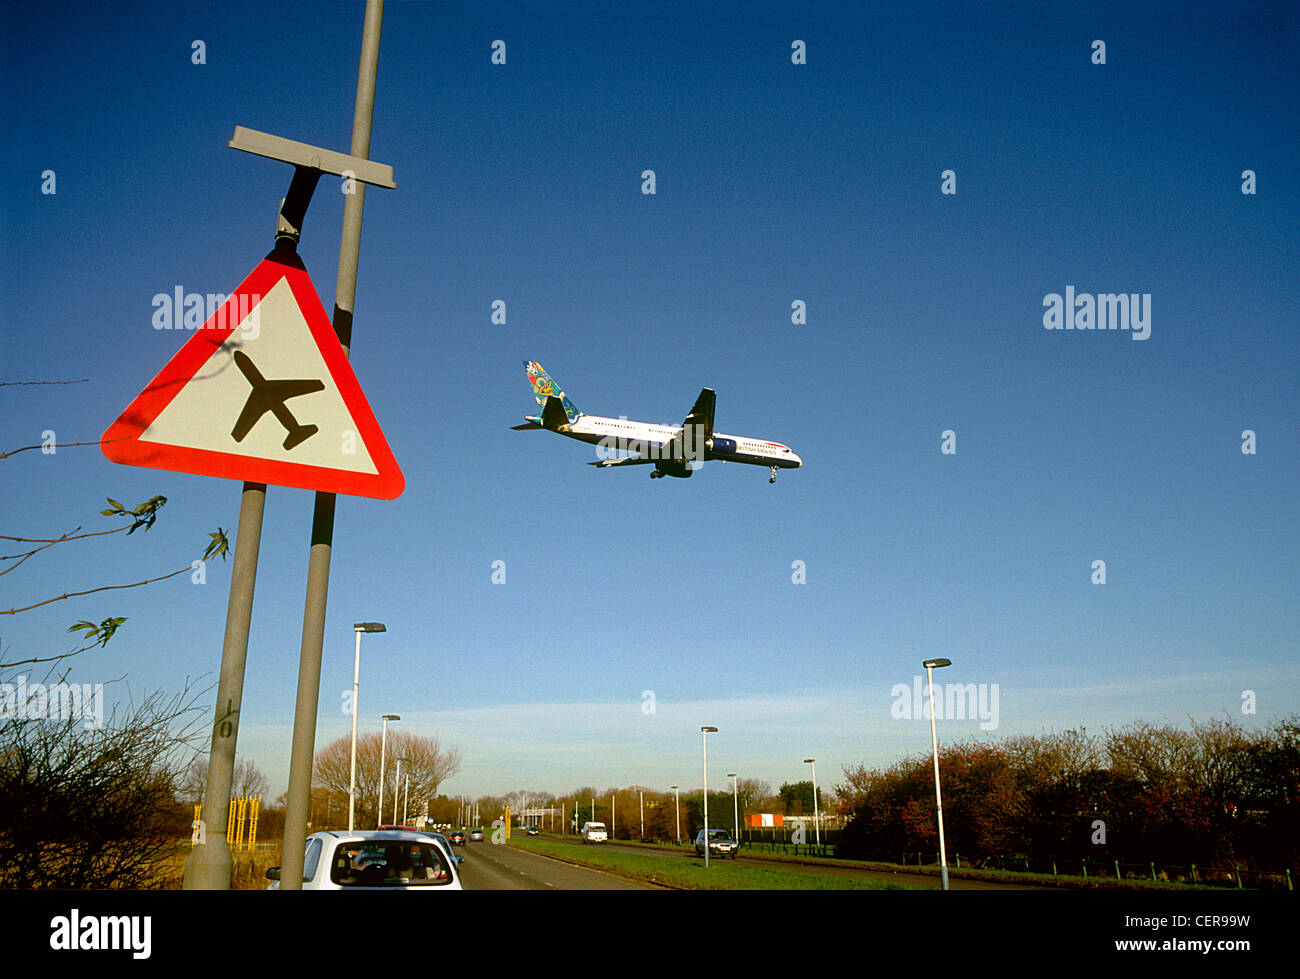 Ein Flugzeug landen am Flughafen Heathrow über eine niedrig fliegende Flugzeug Schild am Straßenrand vorbei kommen. Stockfoto